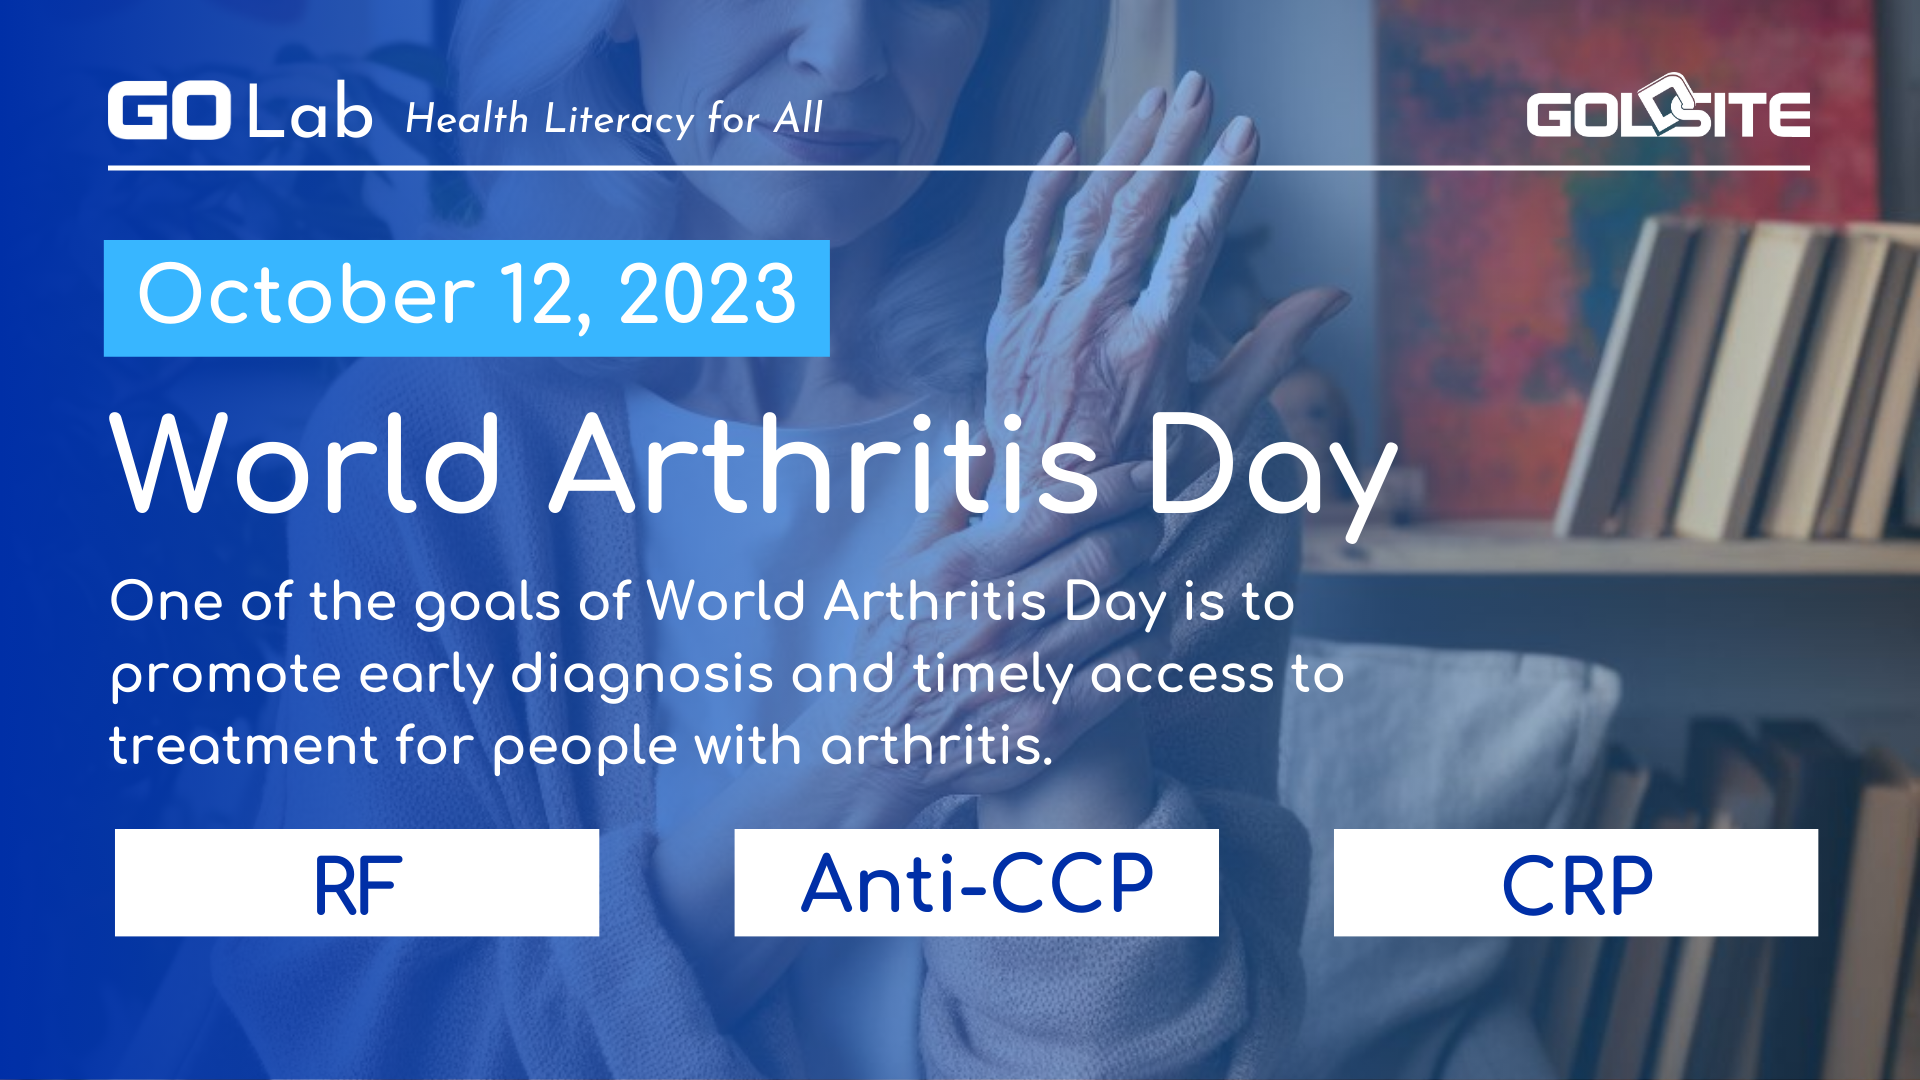 Welche Labortests diagnostizieren Arthritis? -Golab am Weltarthritis -Tag